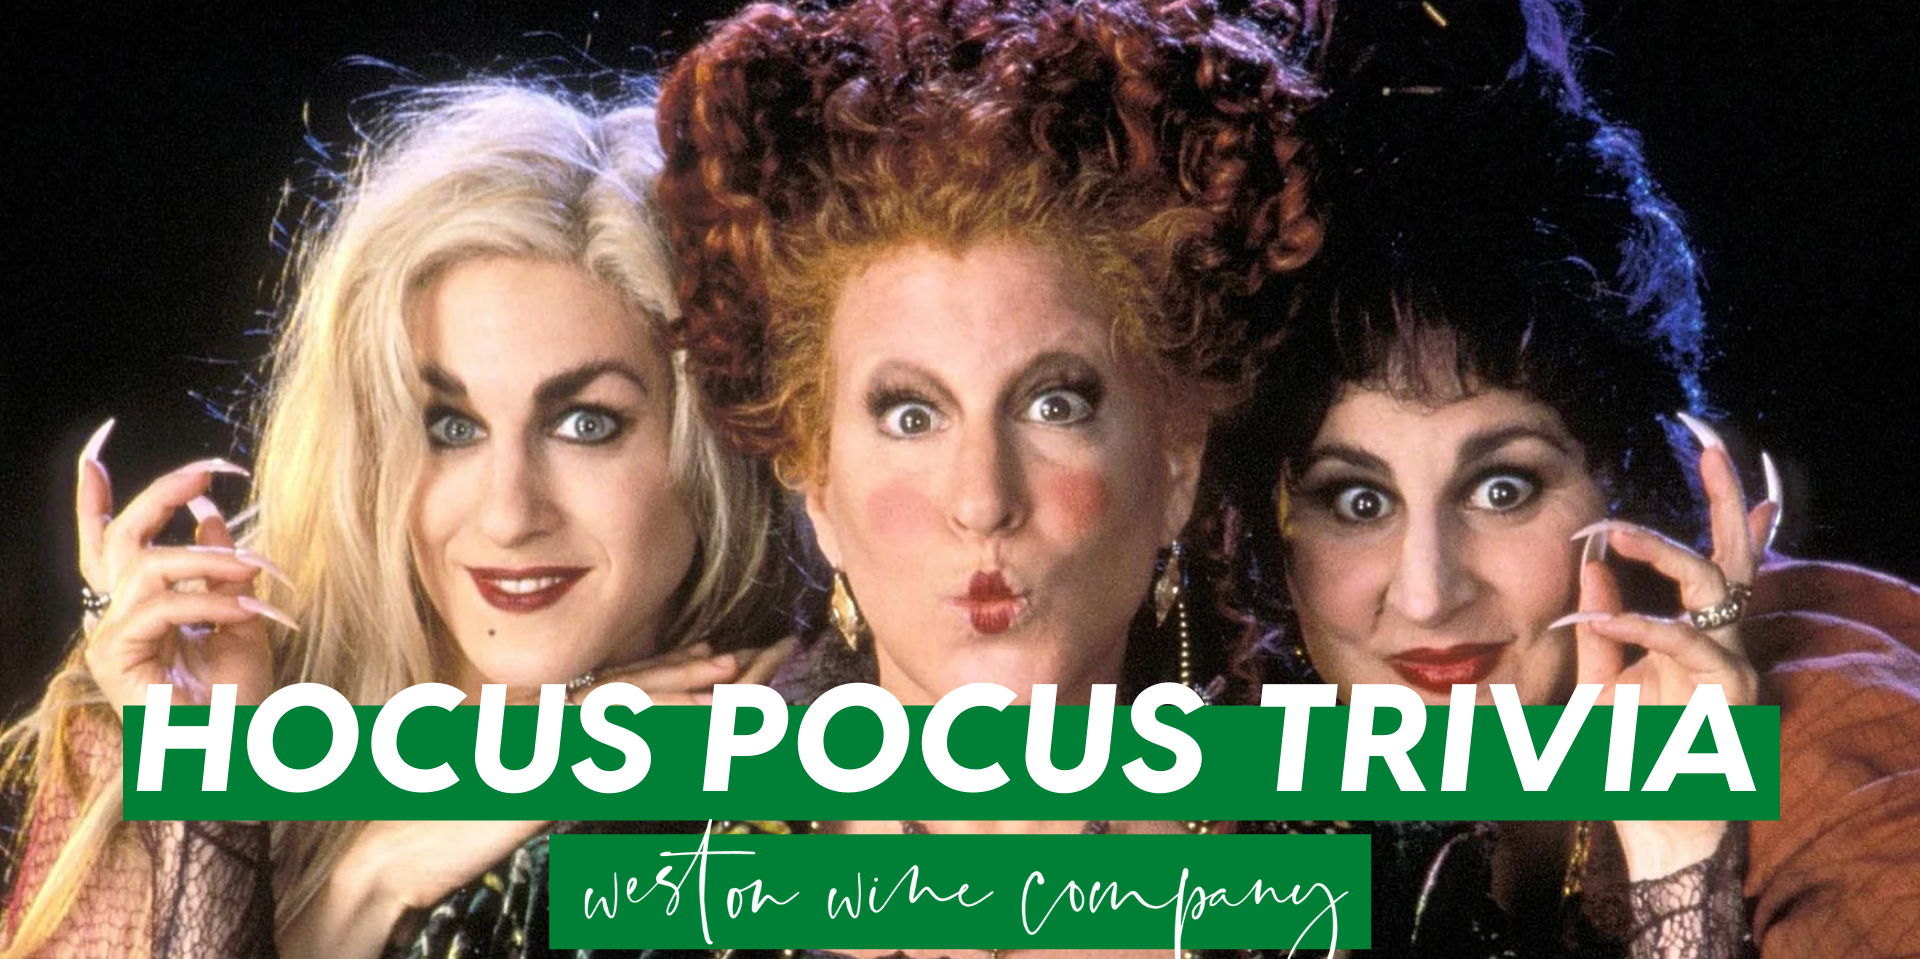 Hocus Pocus Trivia promotional image